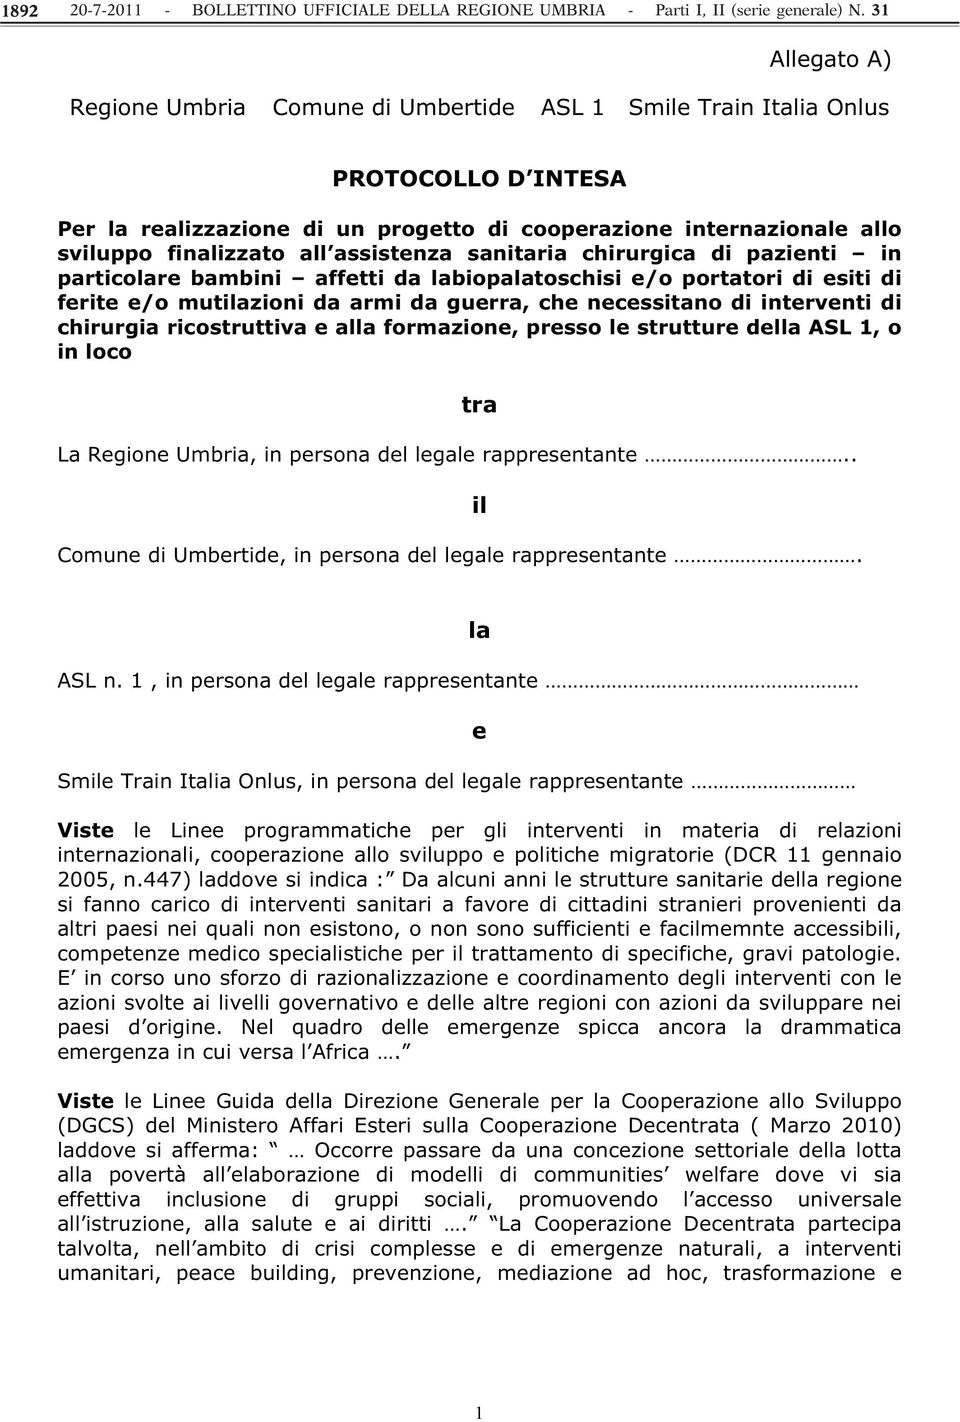 chirurgia ricostruttiva e alla formazione, presso le strutture della ASL 1, o in loco La Regione Umbria, in persona del legale rappresentante.